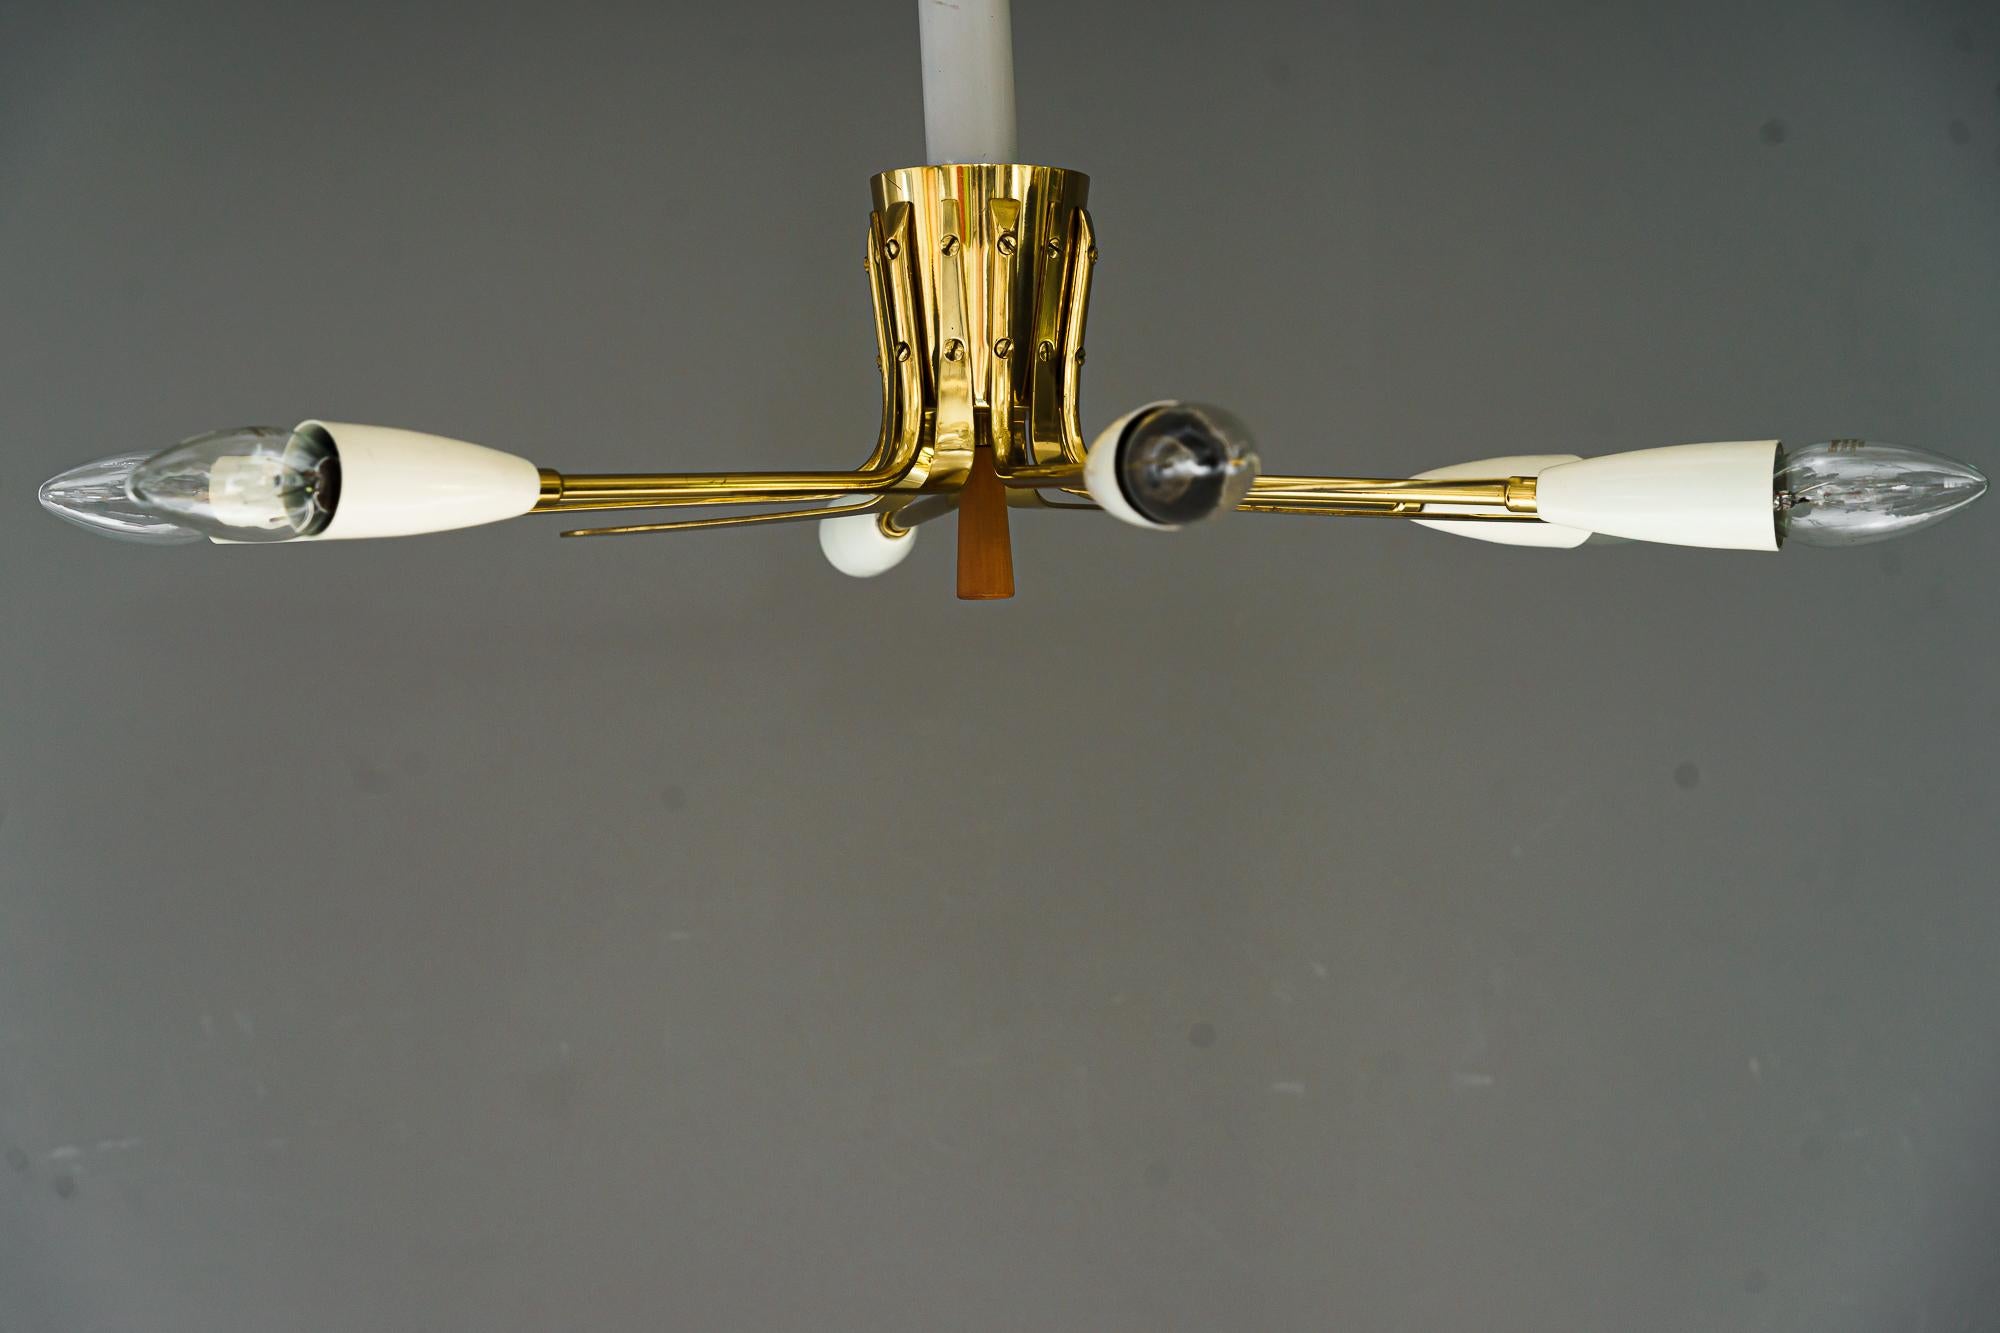 2x Sputnik Flush Mount Entworfen von Rupert Nikoll, Wien 1950
Ursprünglicher Zustand
Preis des Paares